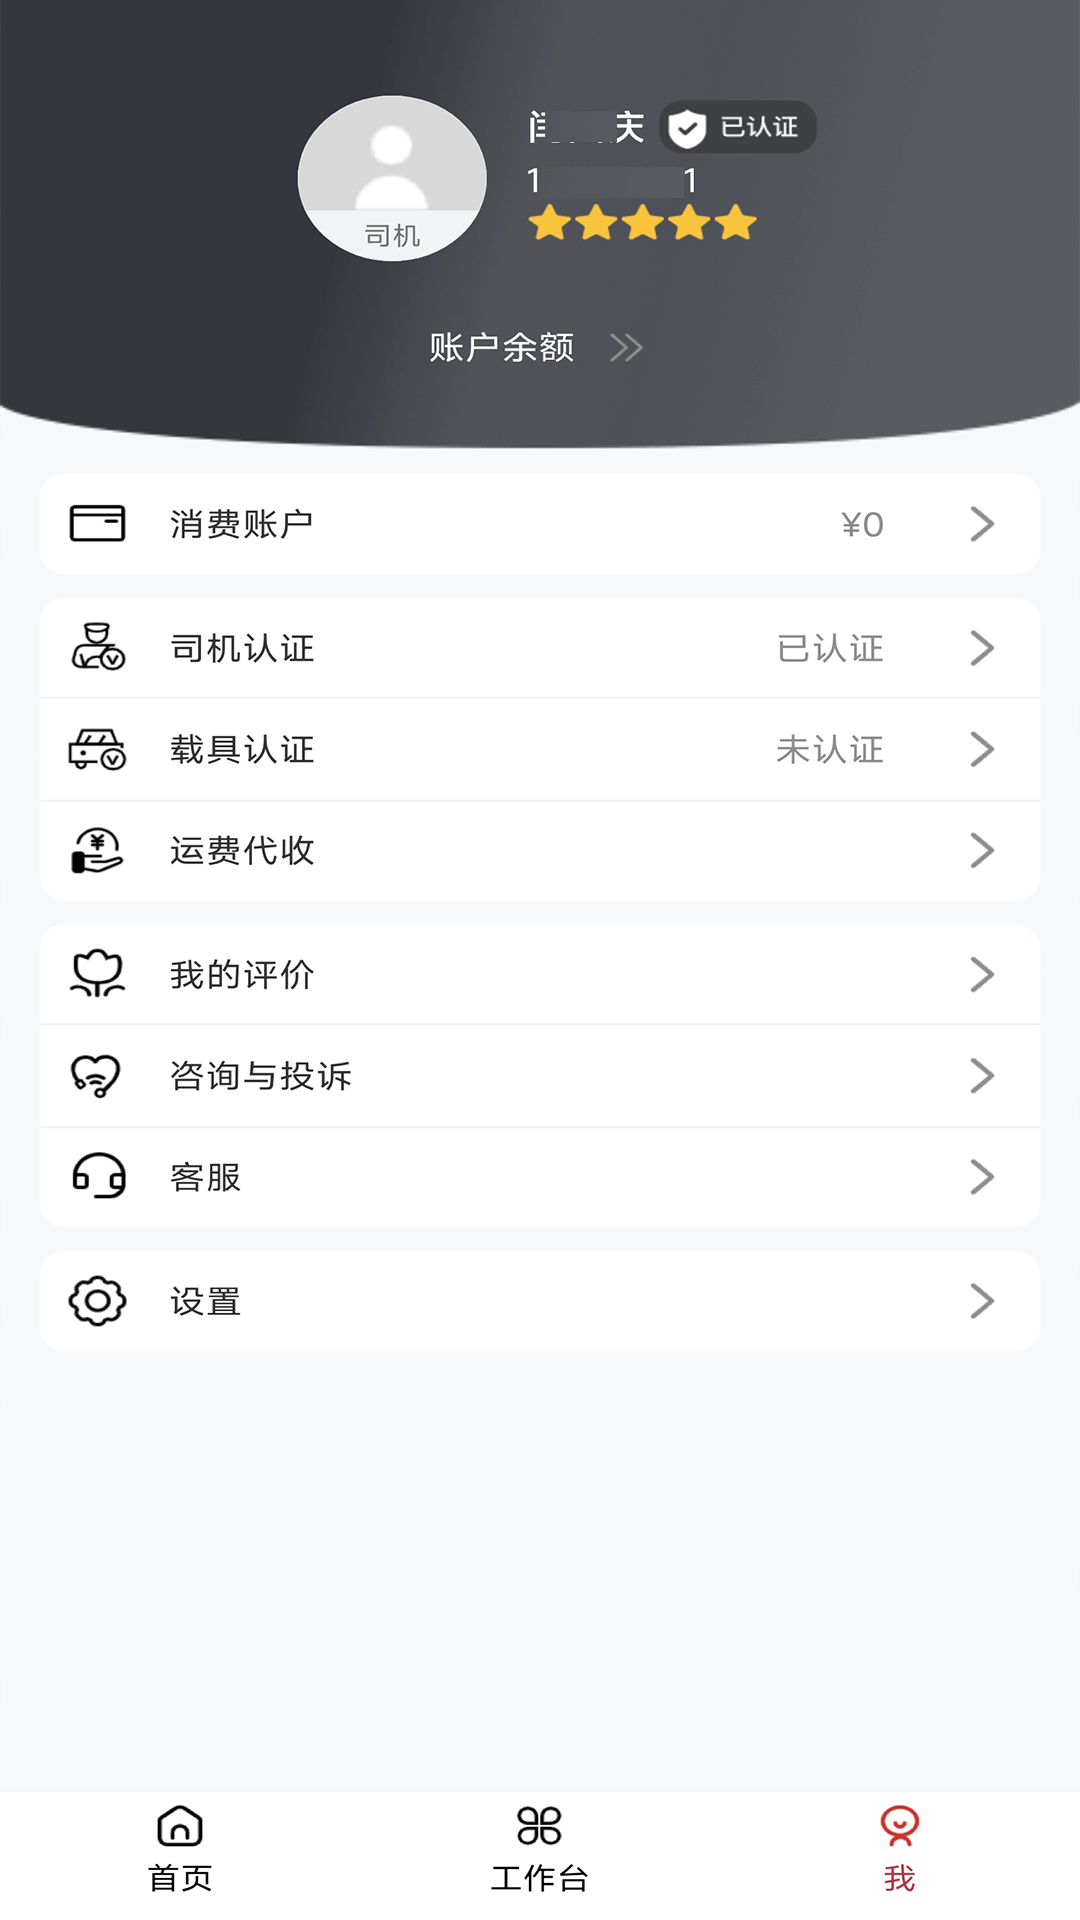 伊顺智运app下载,伊顺智运app官方版 v4.4.4